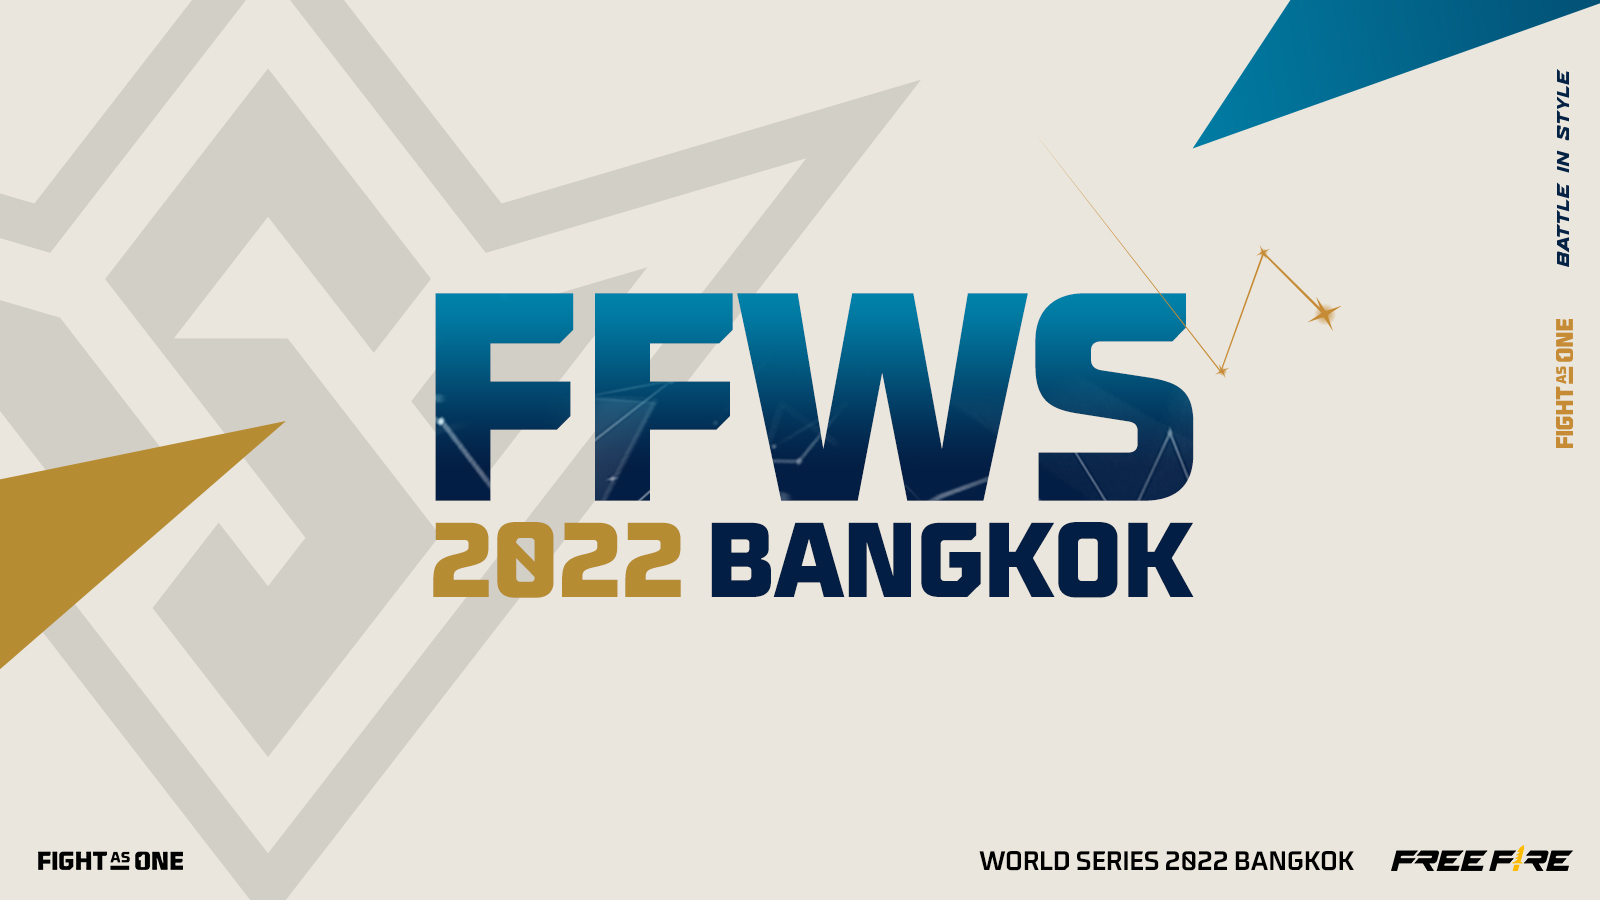 Các đội tuyển xuất sắc nhất trên toàn thế giới đã đến Thái Lan để tham gia tranh tài tại Free Fire World Series (FFWS) 2022 Bangkok 